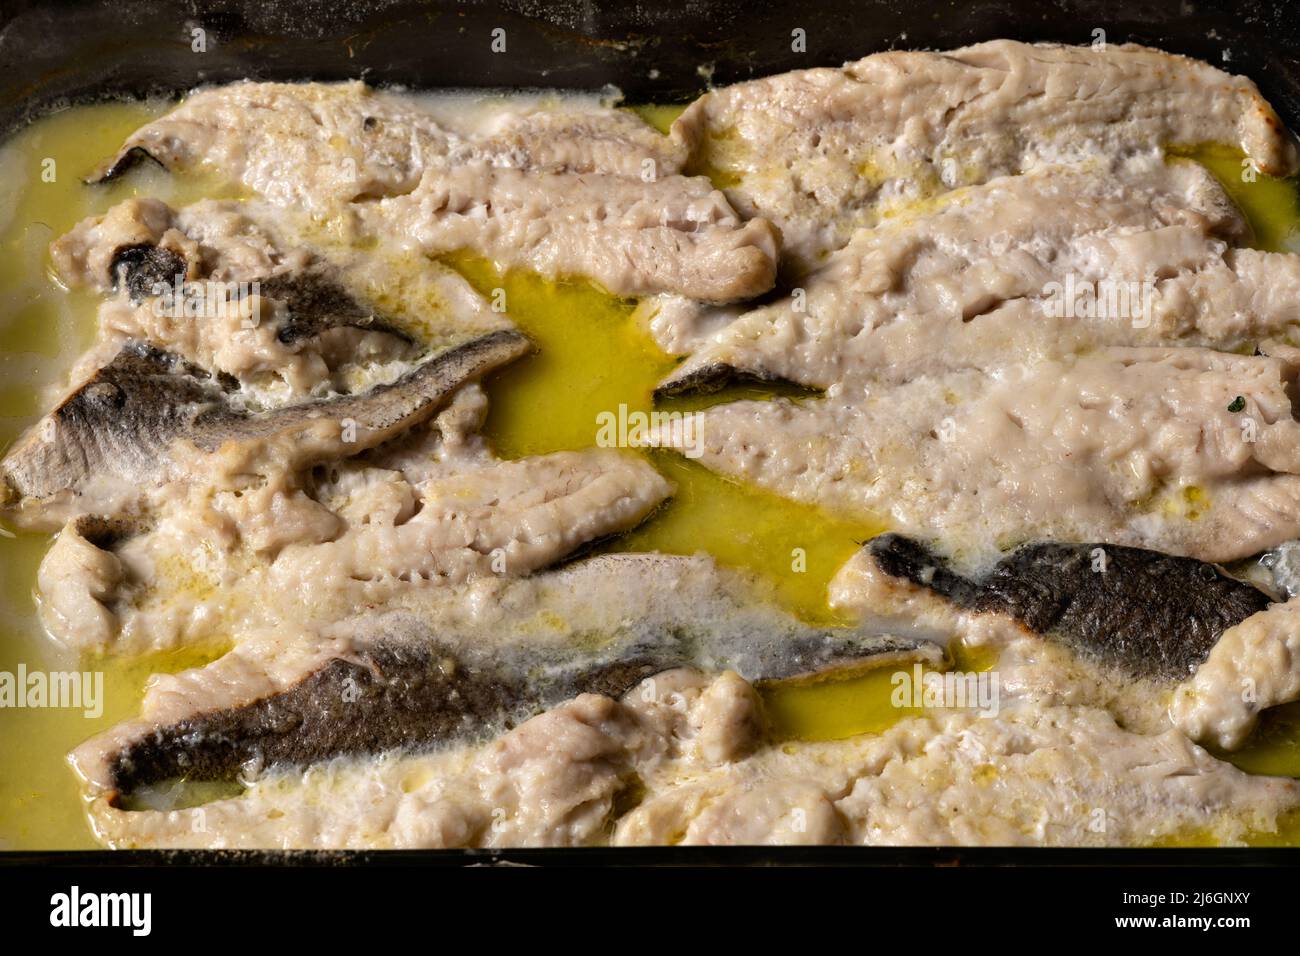 Filetes de pescado blanco asados en el horno con especias en una bandeja de cristal. Concepto de cocina casera. Foto de stock